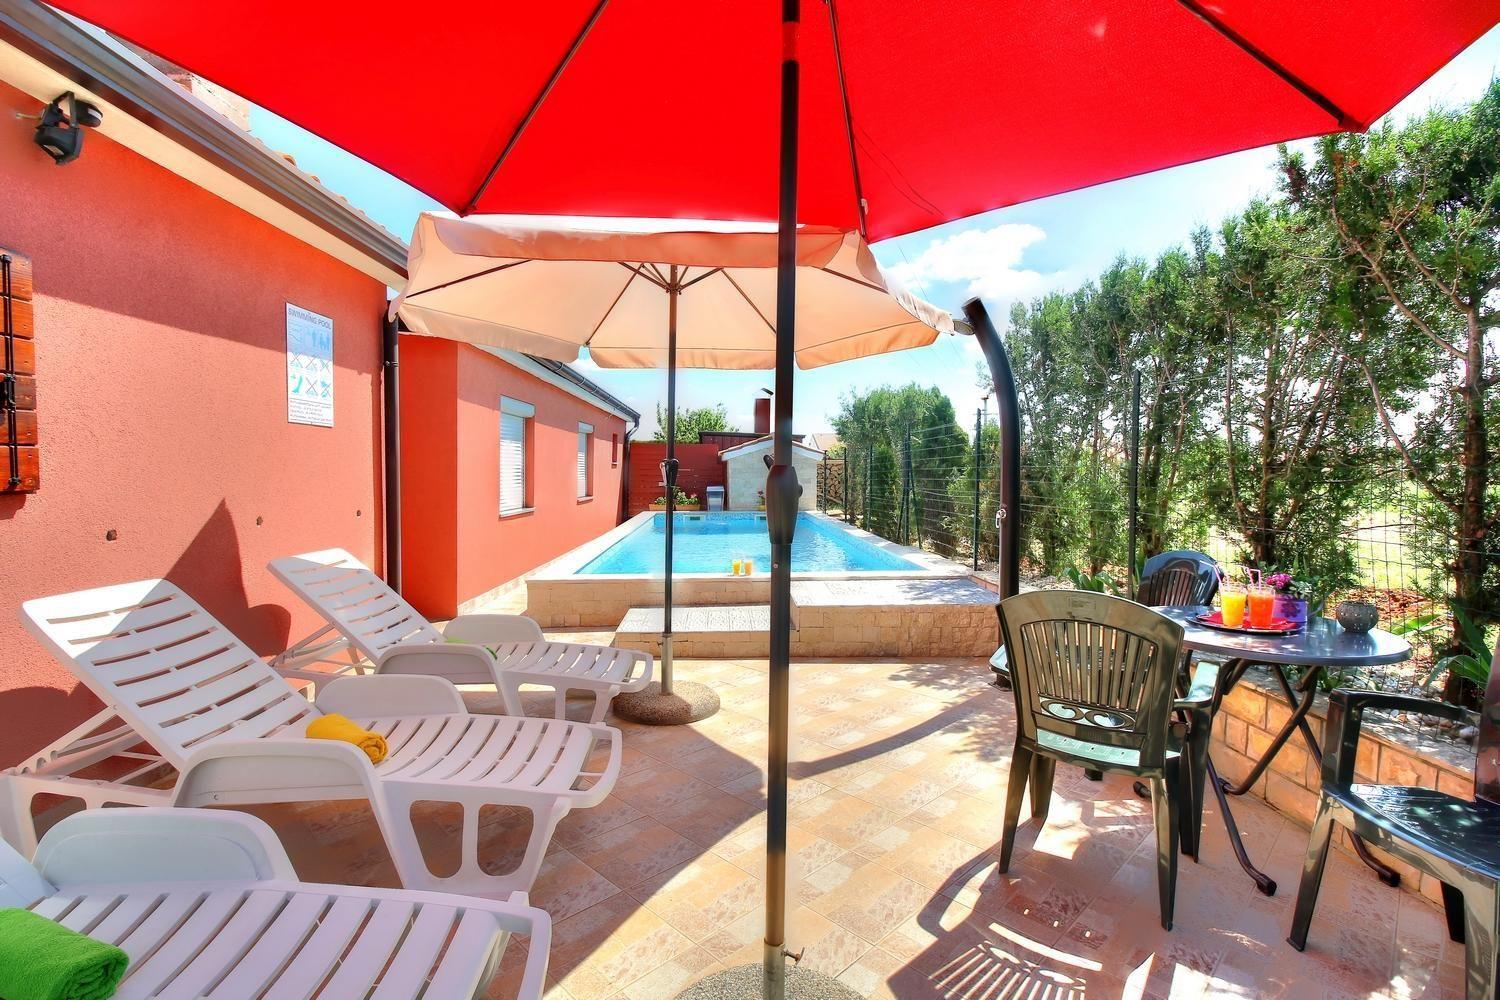  Ferienhaus mit Pool und zahlreichen Annehmlichkei Ferienhaus in Istrien